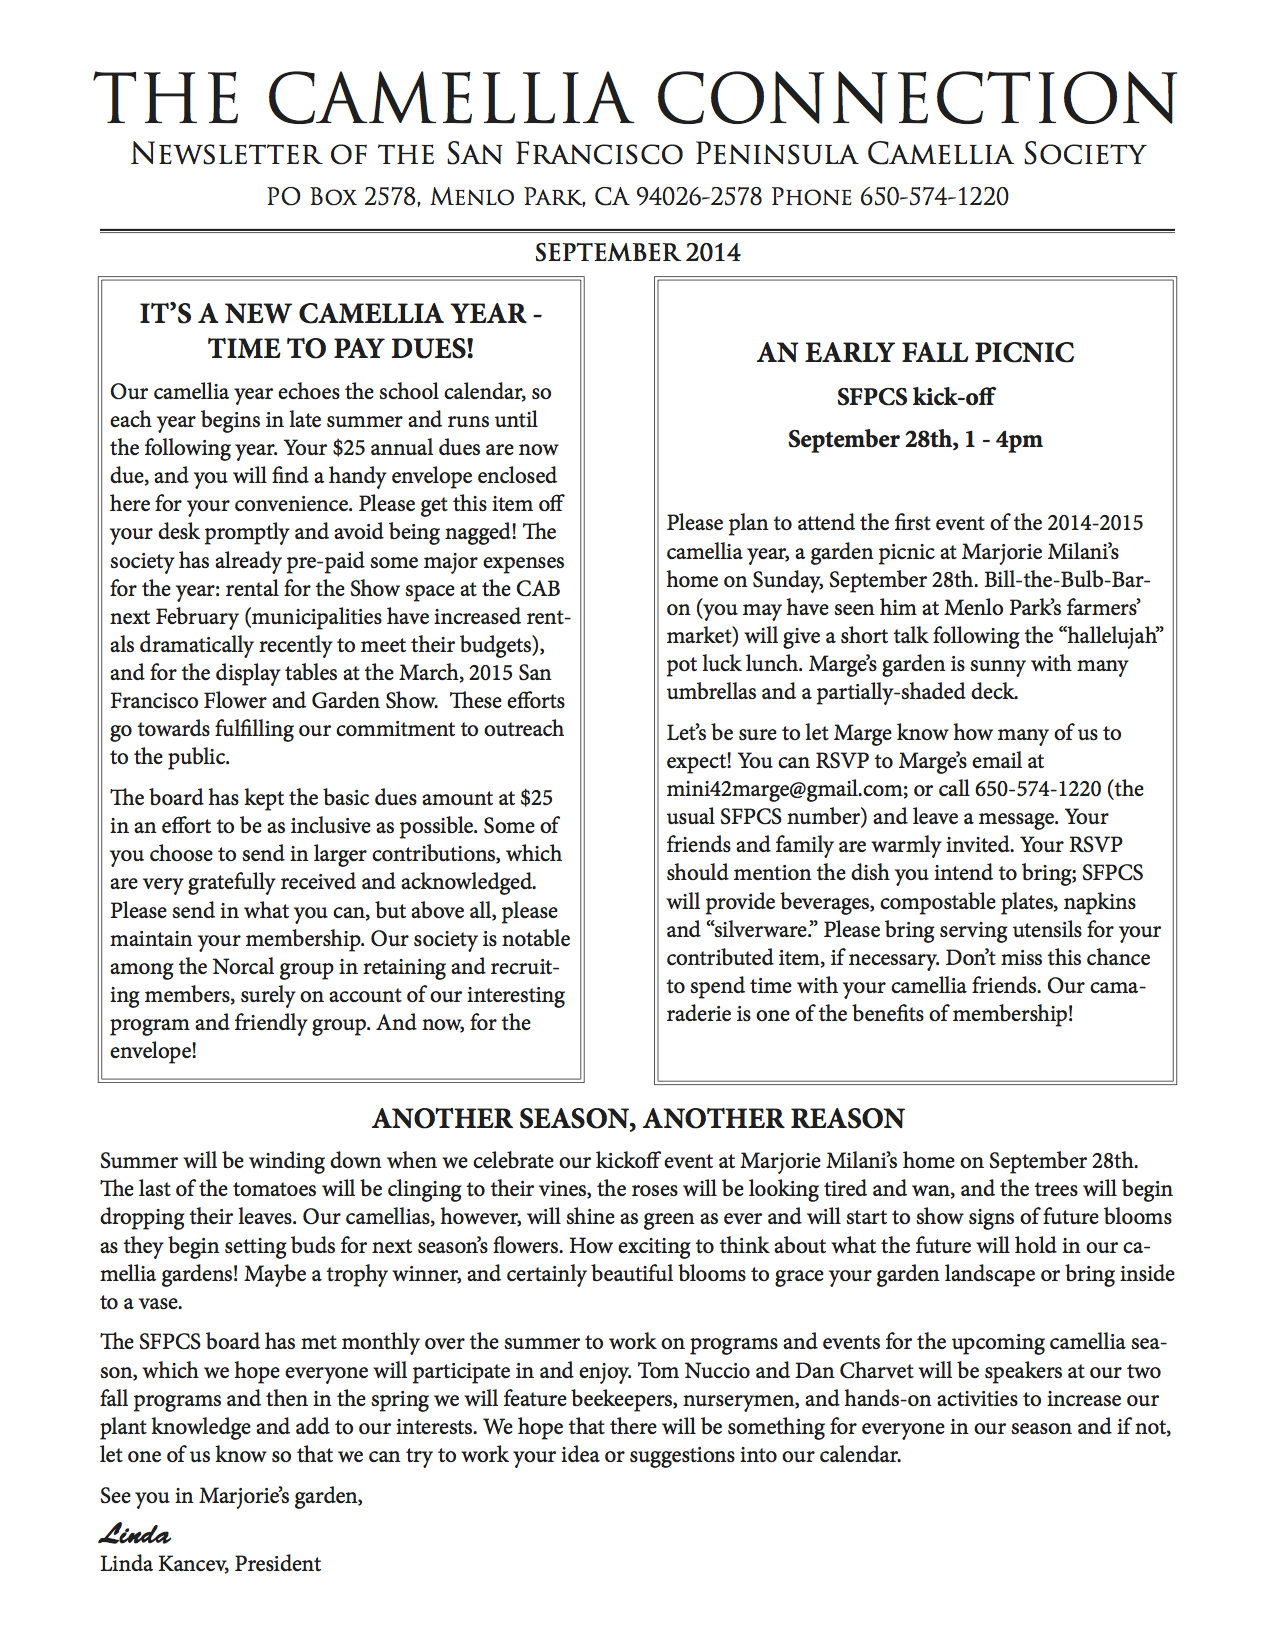 September 2014 newsletter p1